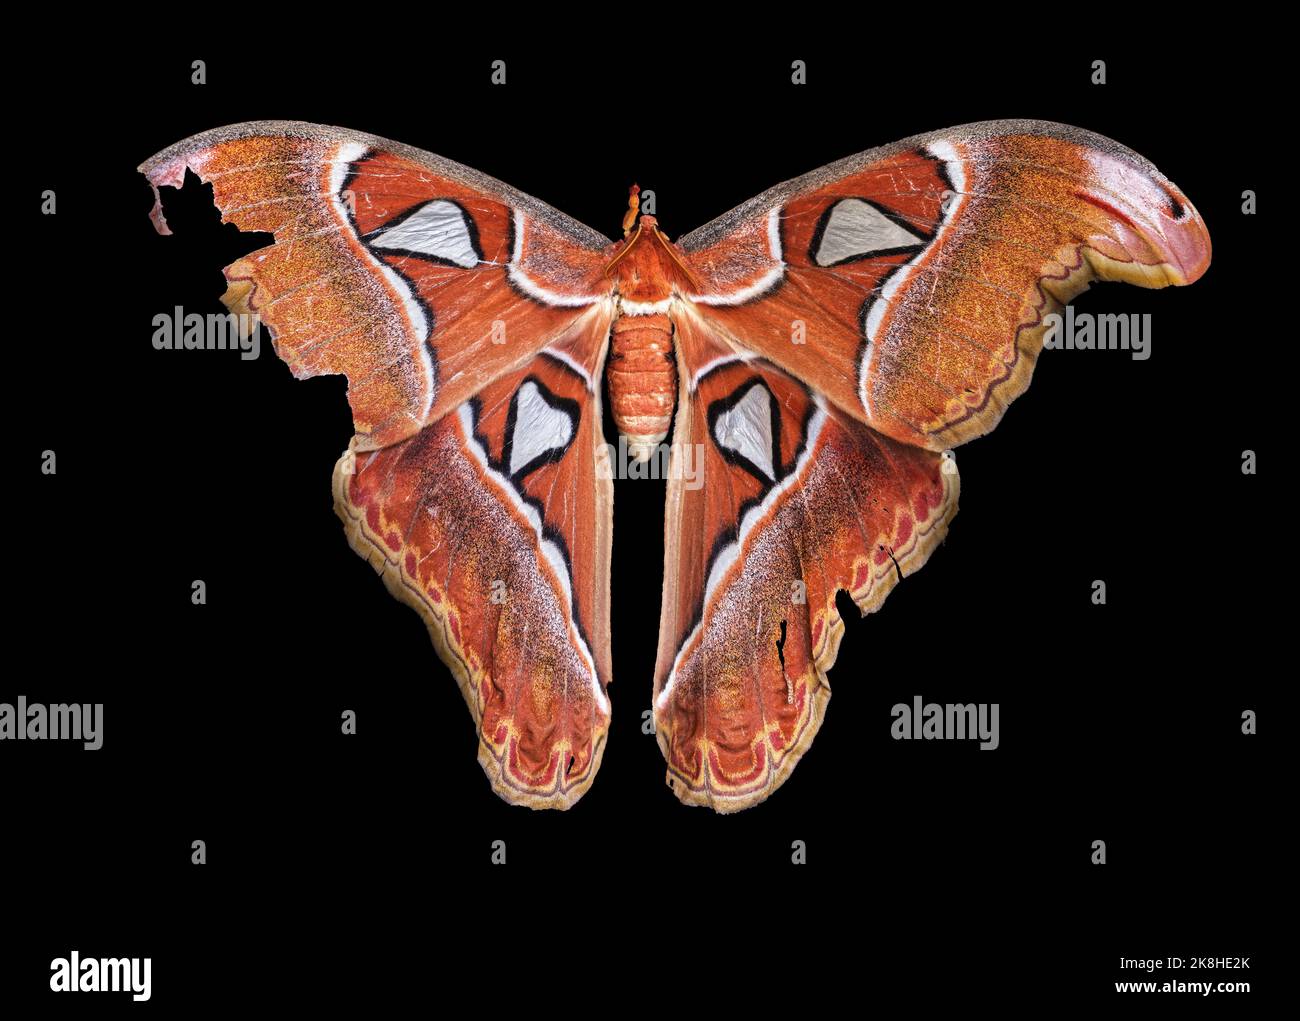 Atlas Moth, un spécimen vivant en Asie du Sud-est, Iloilo, Philippines. Arrière-plan noir. Haut niveau de détail d'un grand Atlas d'Atacus femelle. Banque D'Images